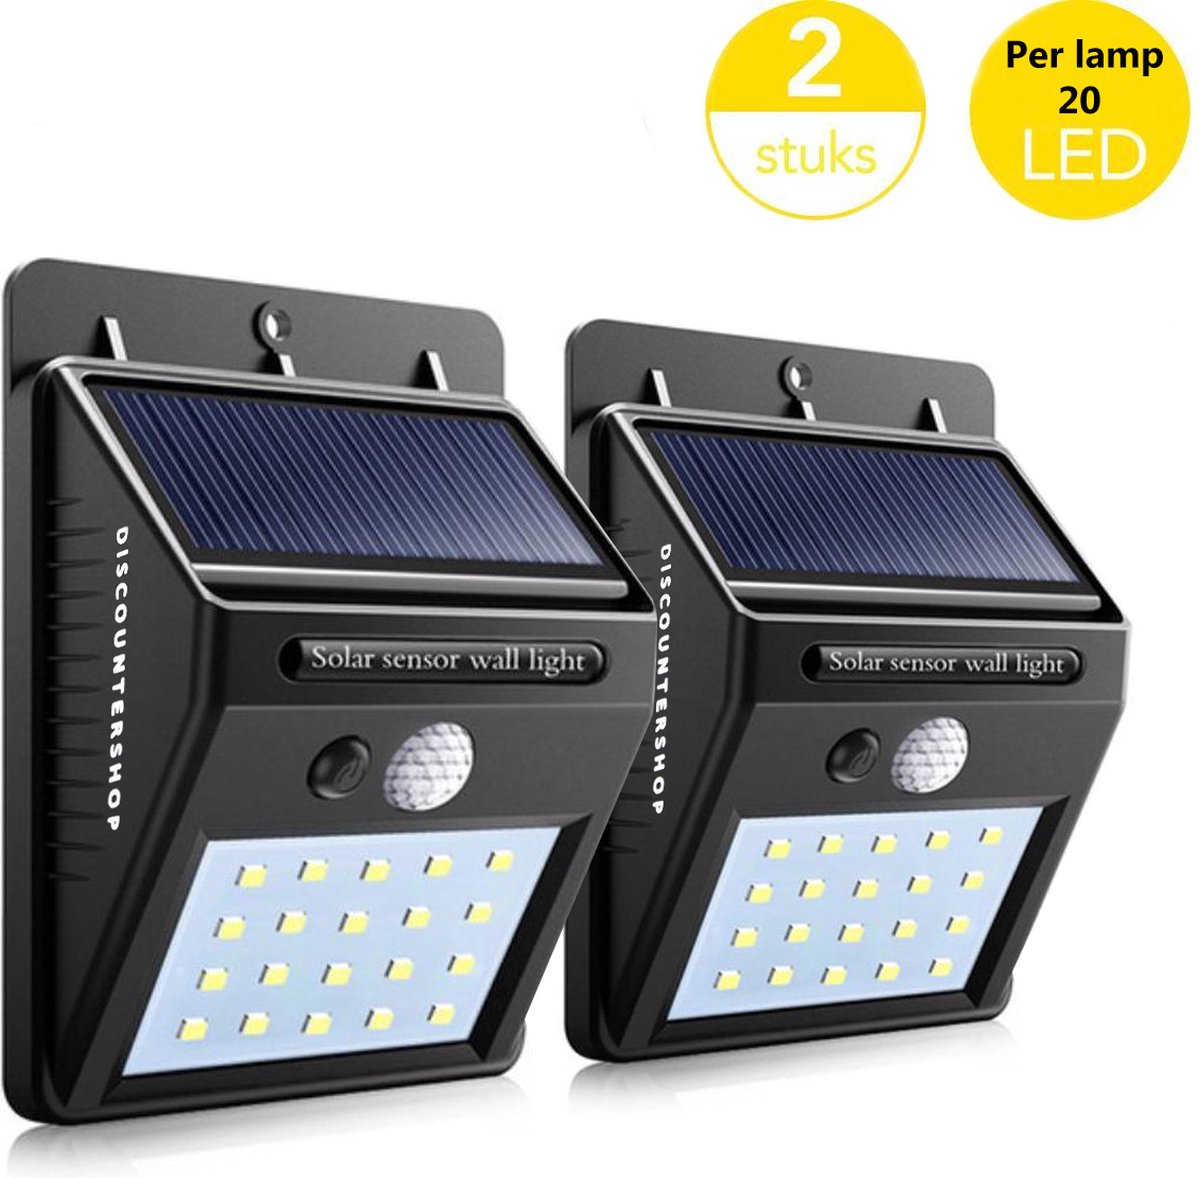 2x Automatische Solar LED lamp - 40 LED - Bewegingssensor - Zonne-energie - Tuinverlichting voor hek en wand